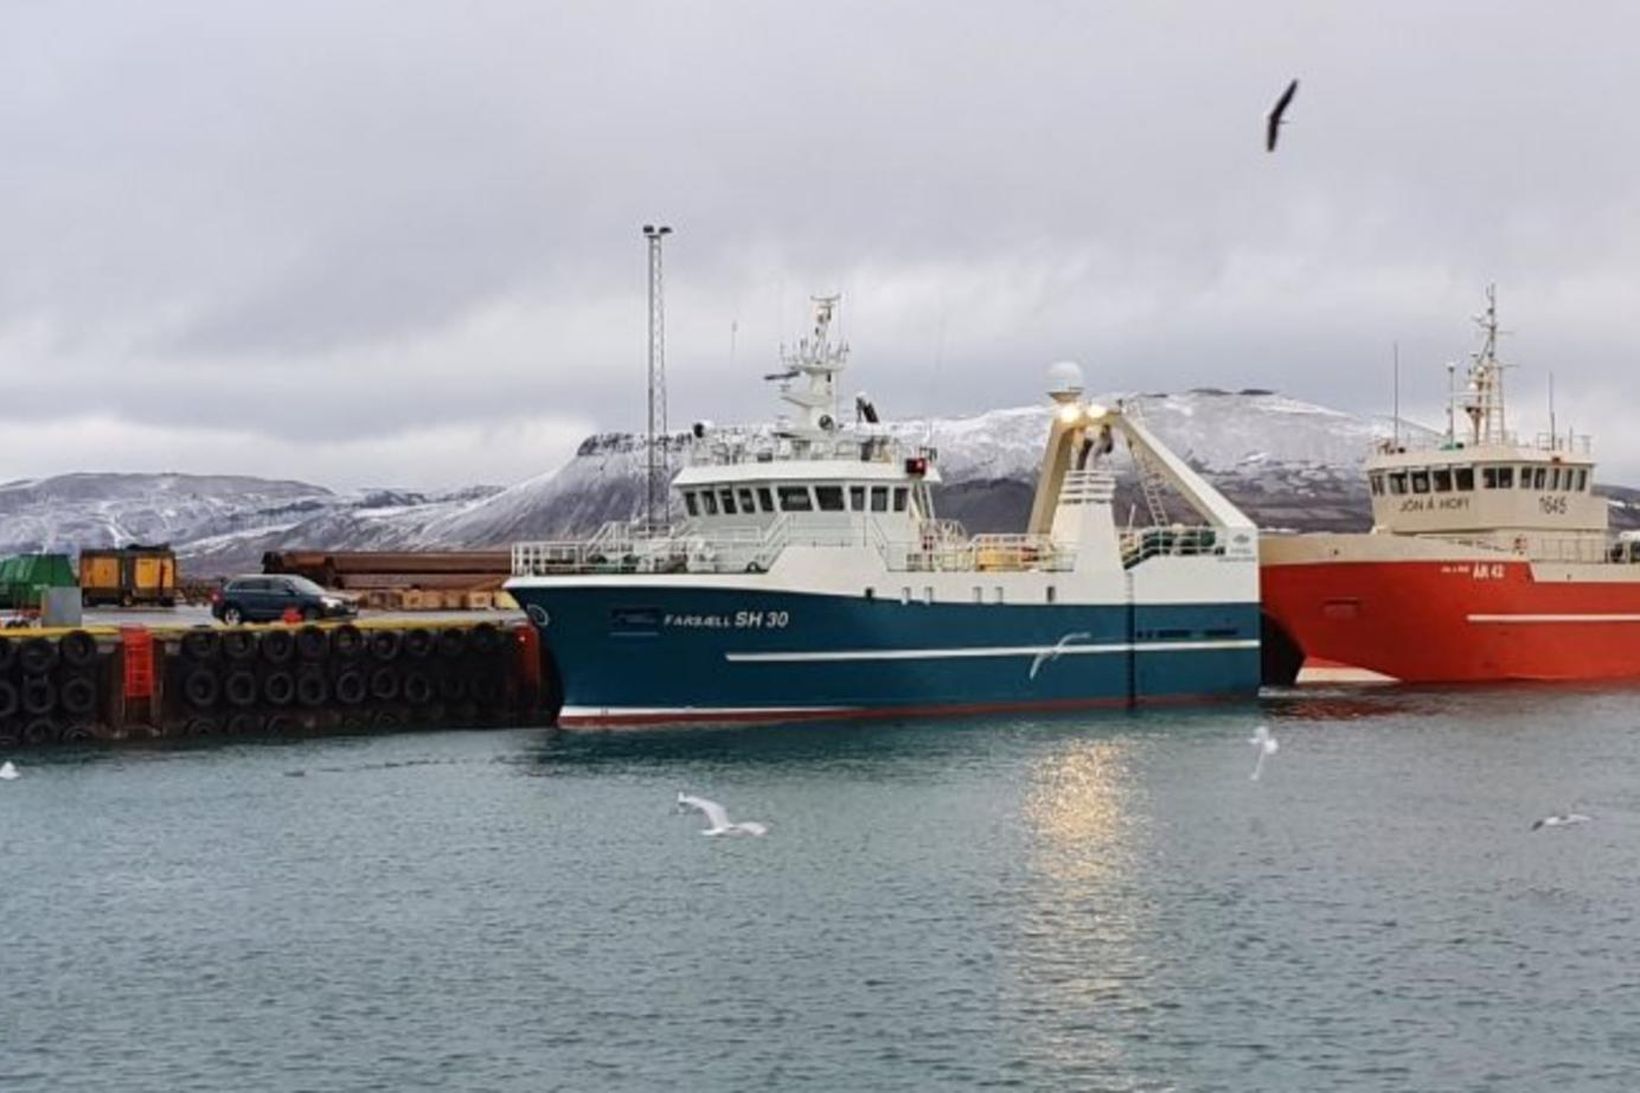 Farsæll landaði 74 tonnum í Grundarfirði eftir fimm daga túr.